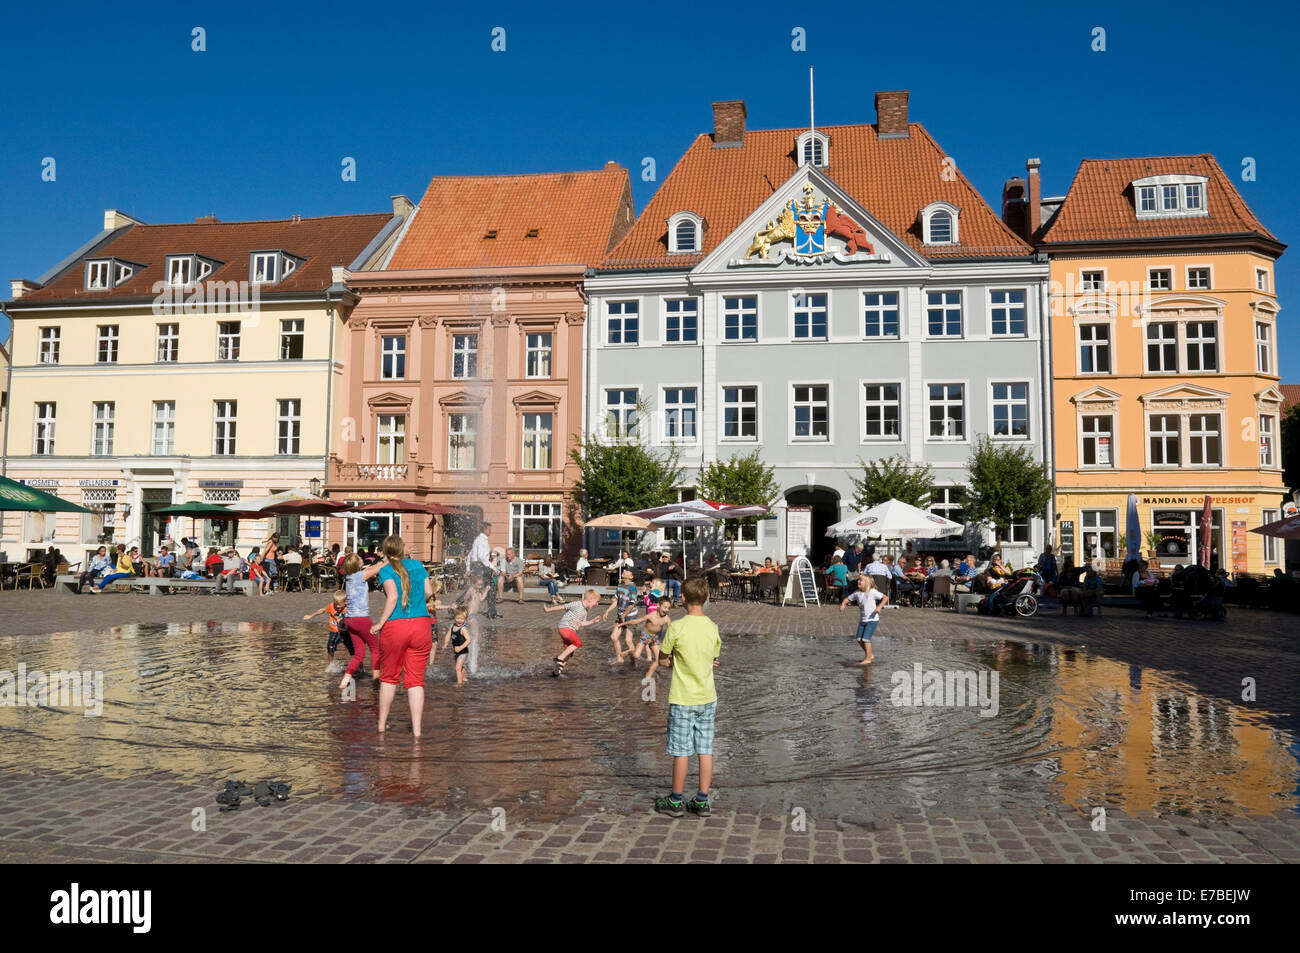 Kinder spielen in den Brunnen am alten Marktplatz in Stralsund, Deutschland. Stockfoto